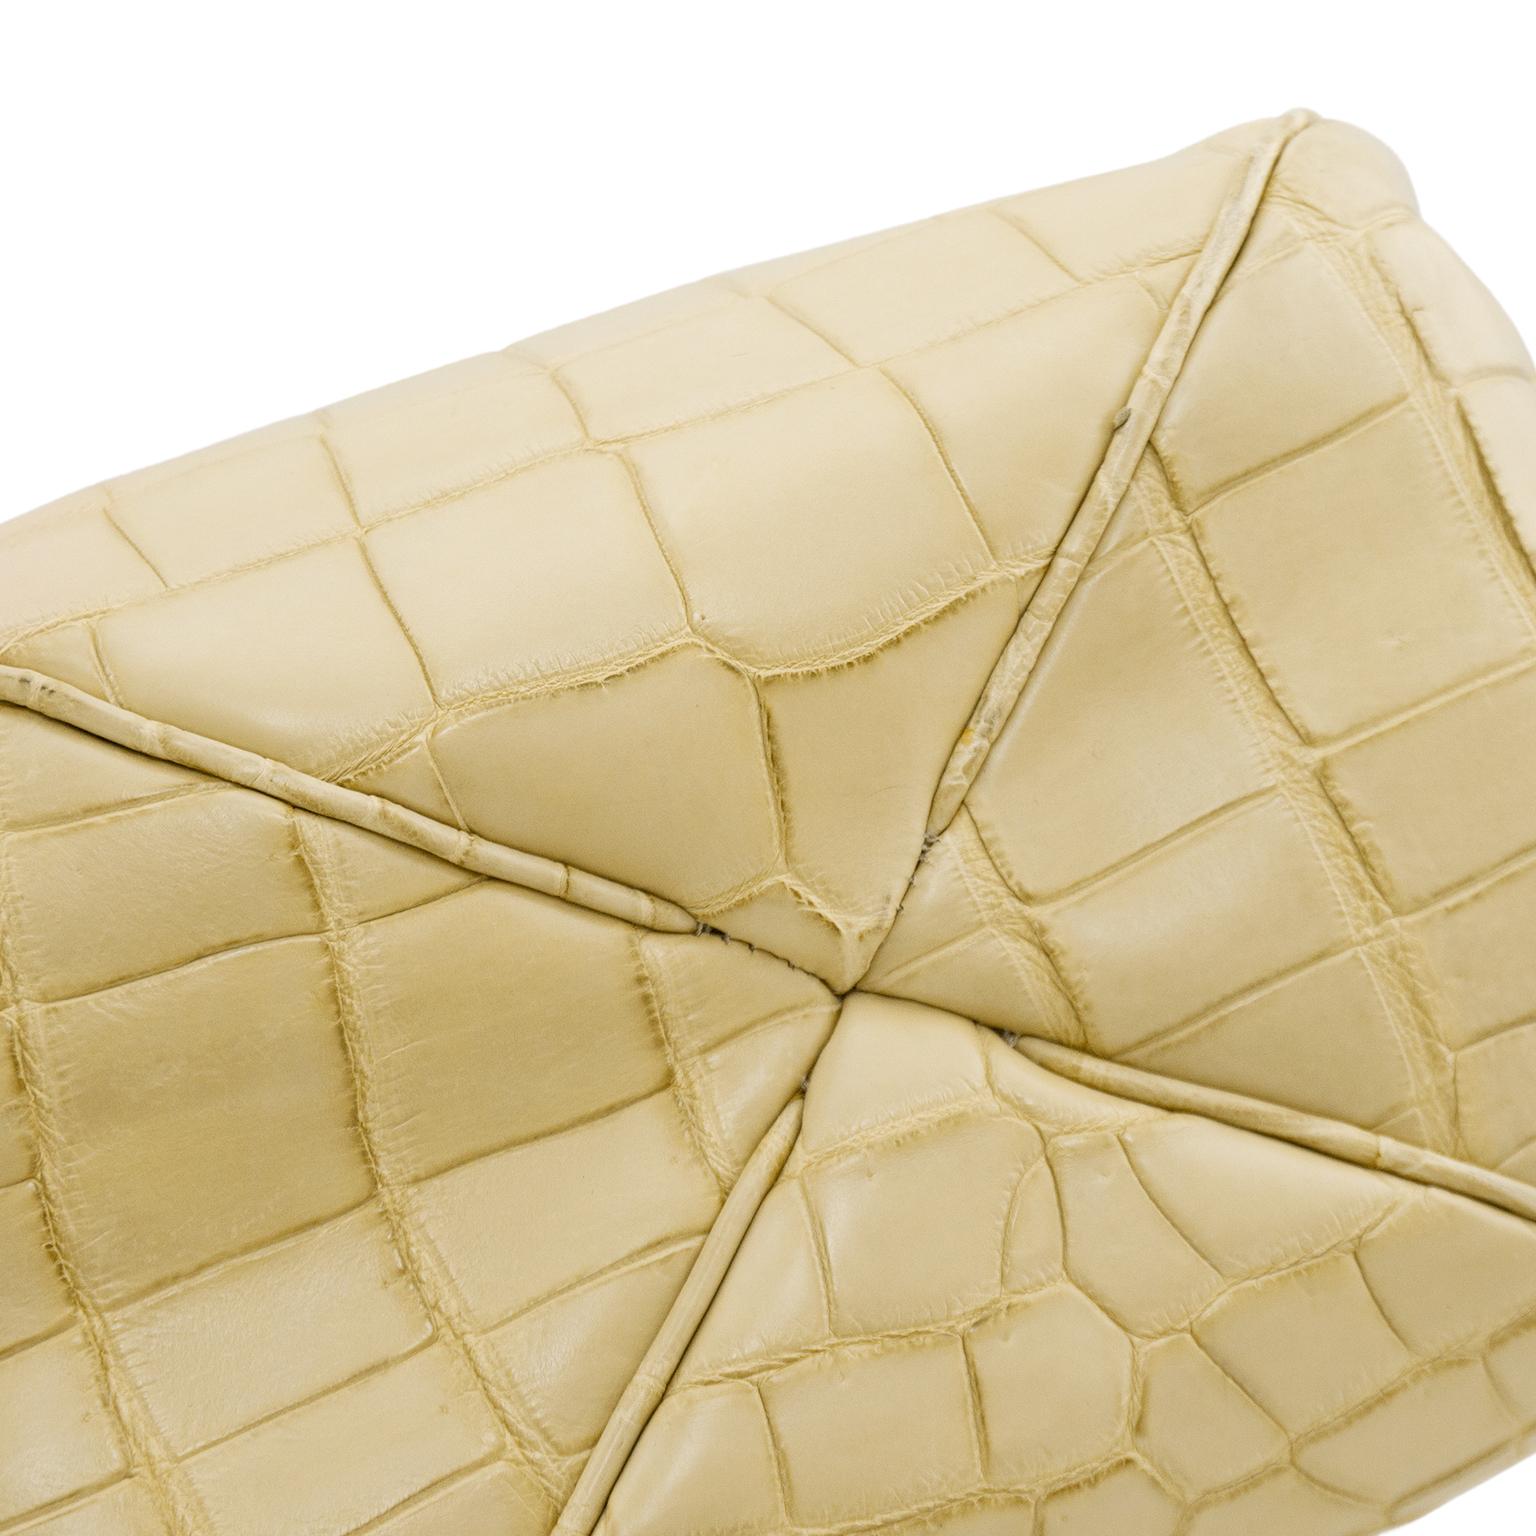 1990s Italian Matte Beige Croc Effect Top Handle Handbag For Sale 1